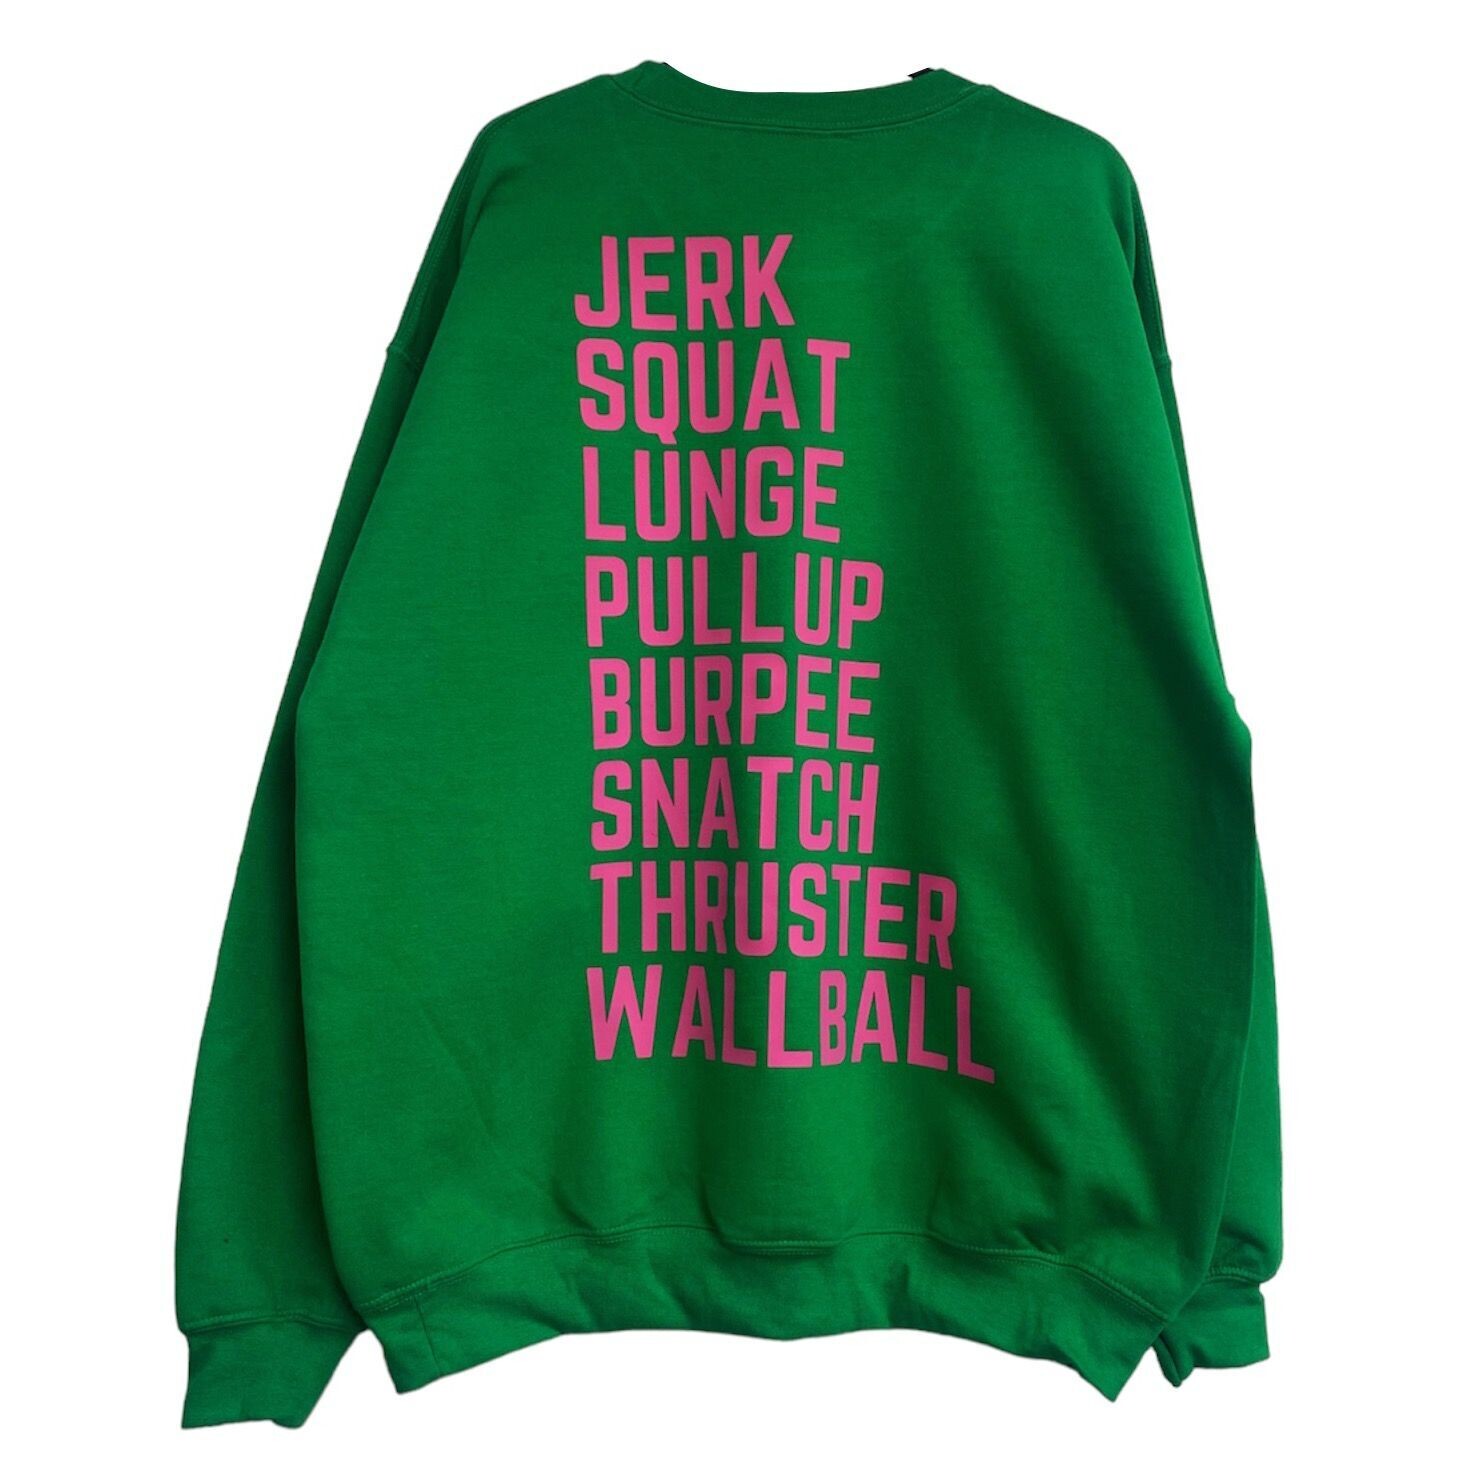 JERK sweatshirt KELLY GREEN & BUBBLEGUM PINK